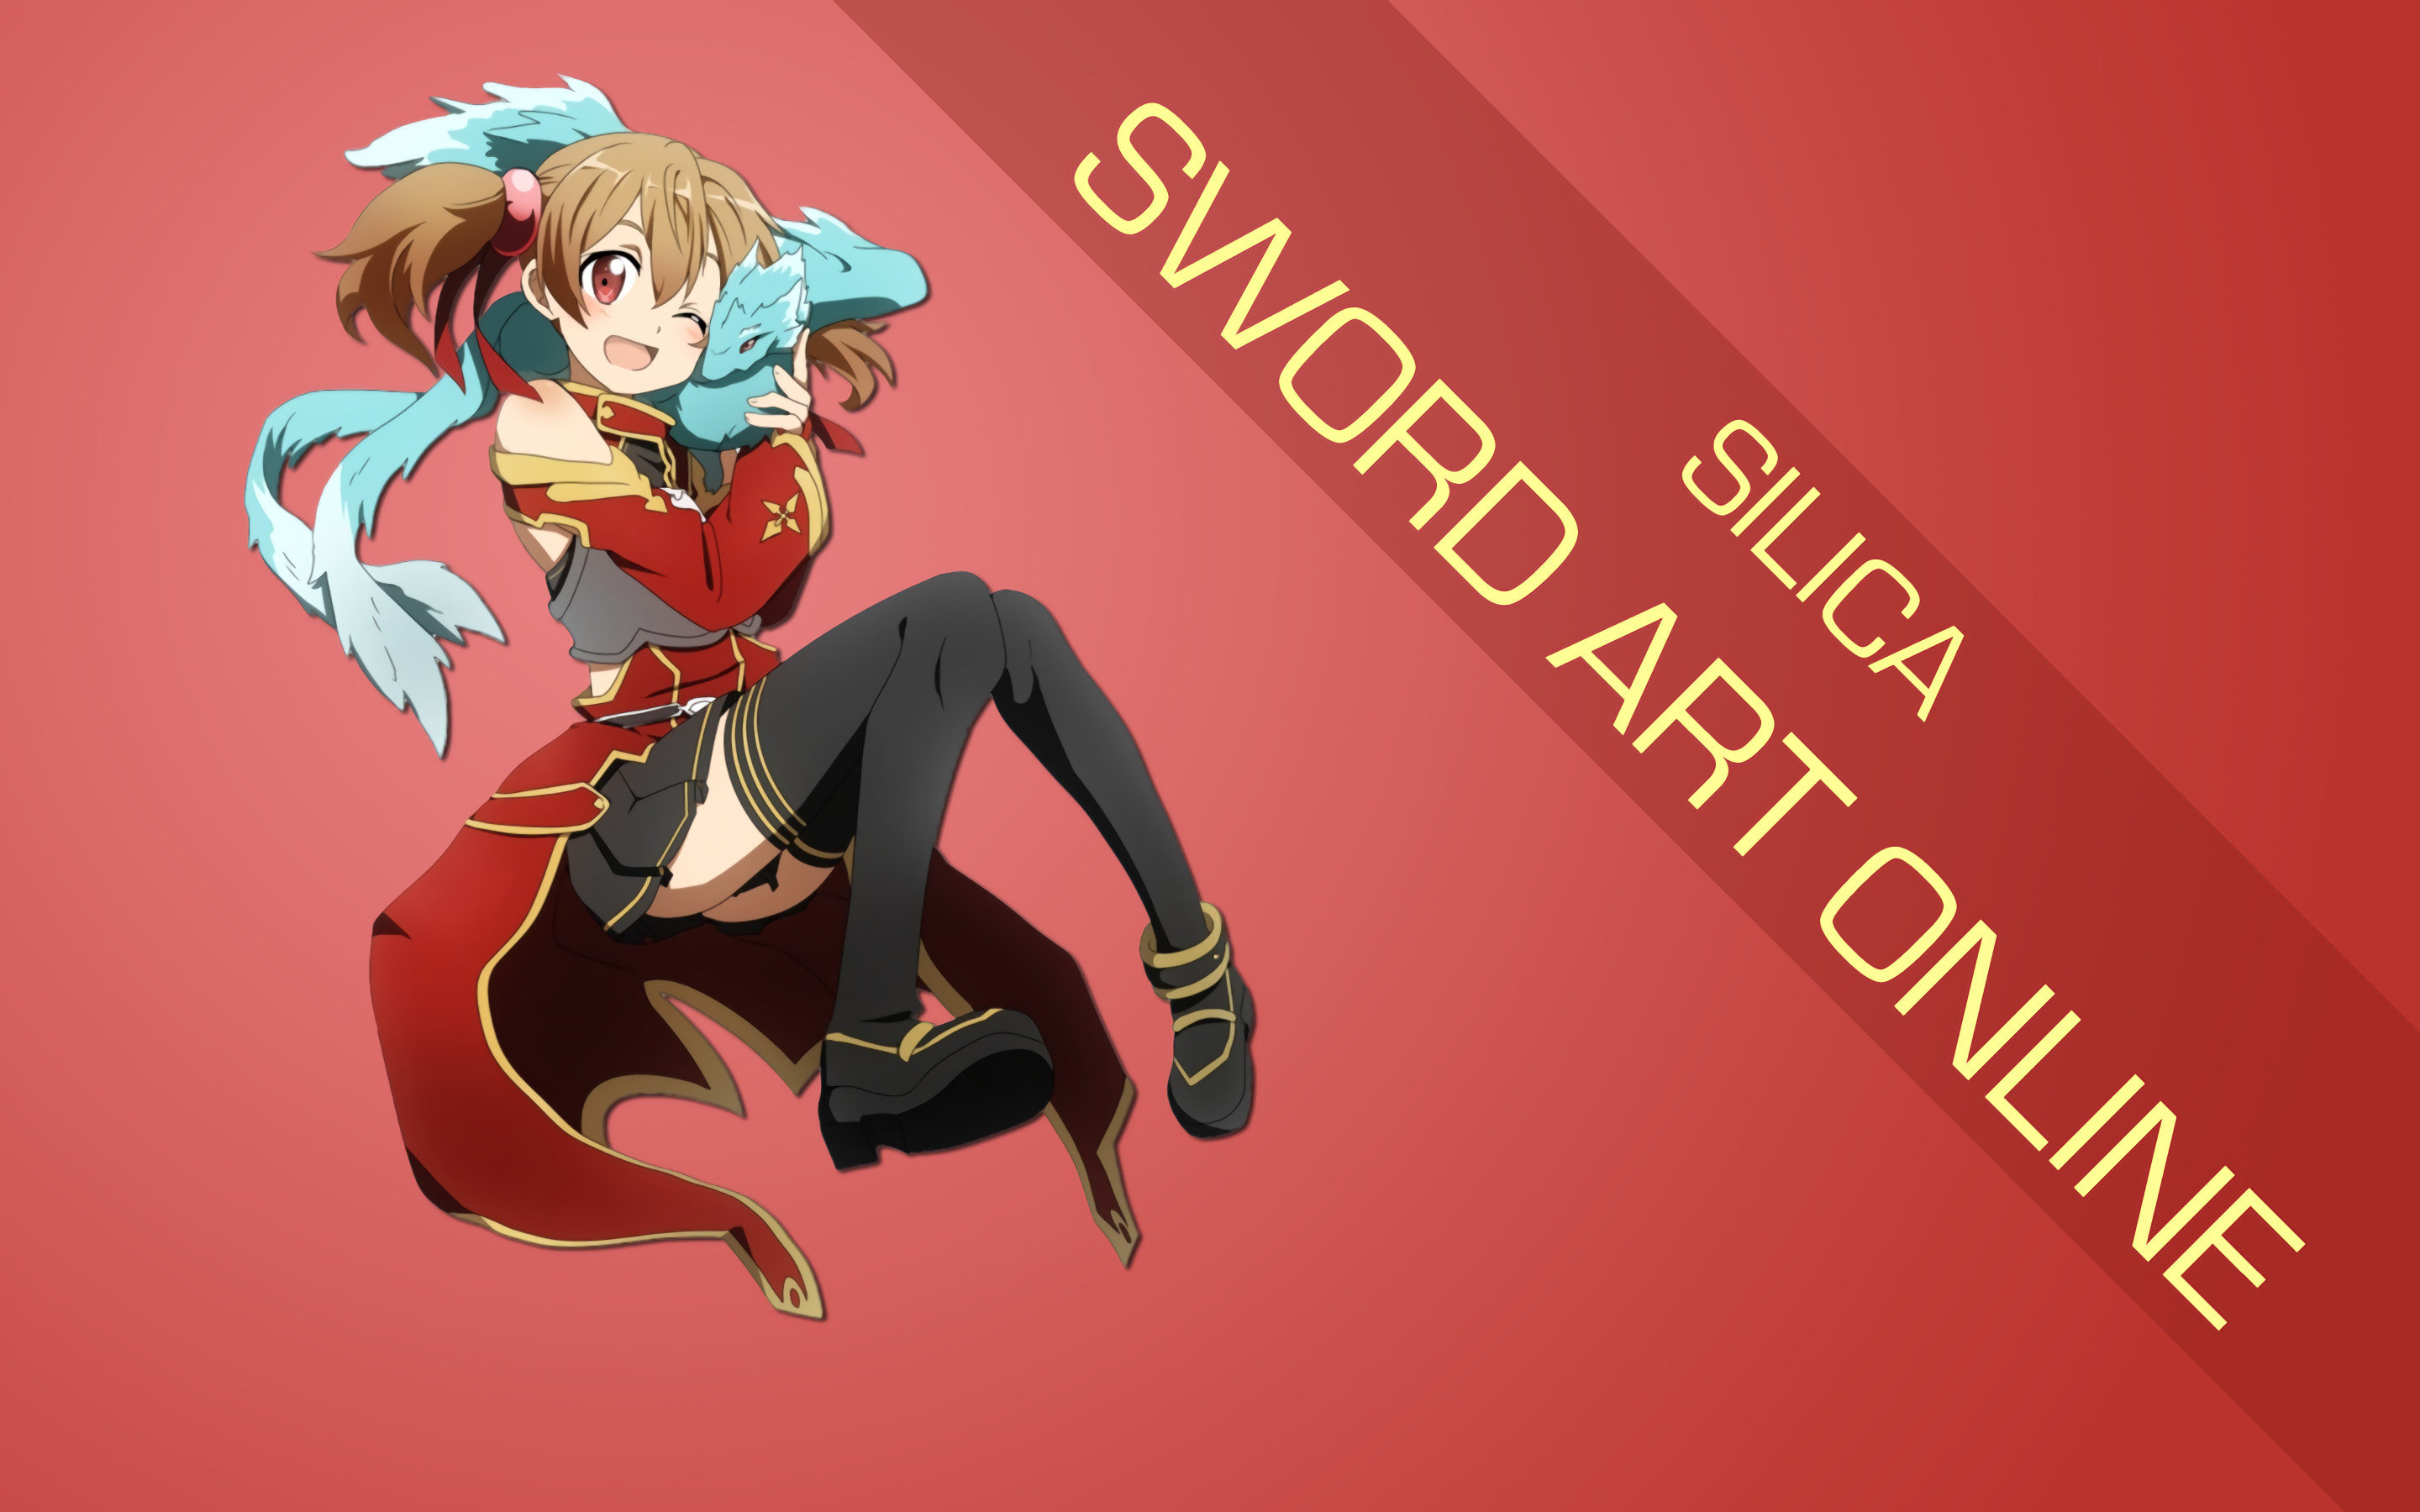 Best Sword Art Online (SAO) wallpaper ID:181183 for High Resolution hd 2880x1800 computer